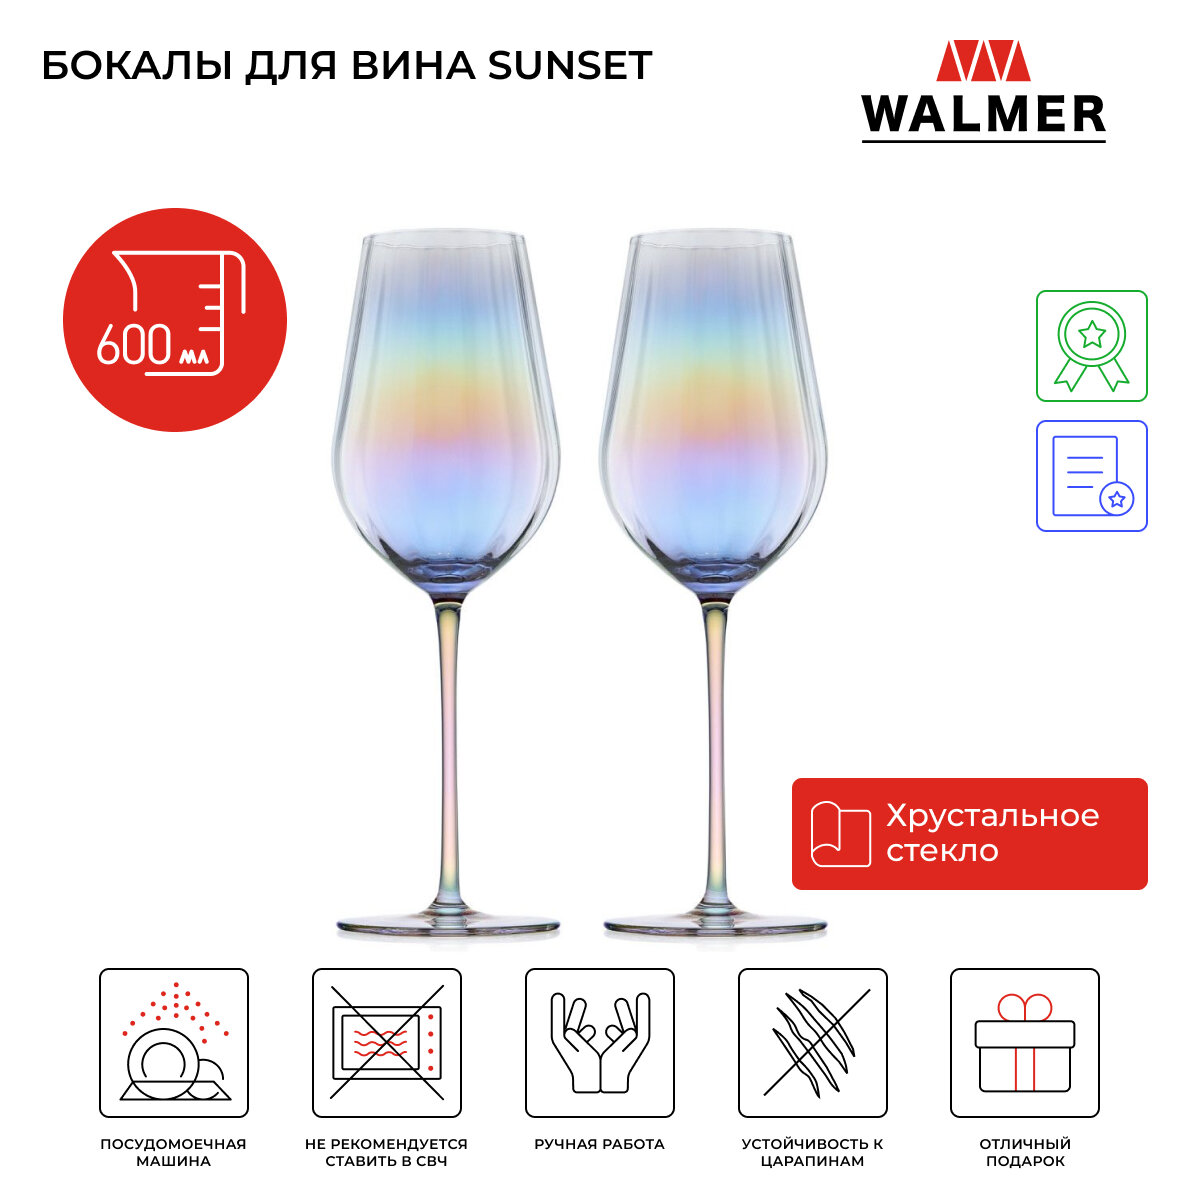 Набор бокалов для вина Walmer Sunset перламутр, 2 шт, 600 мл, цвет перламутр